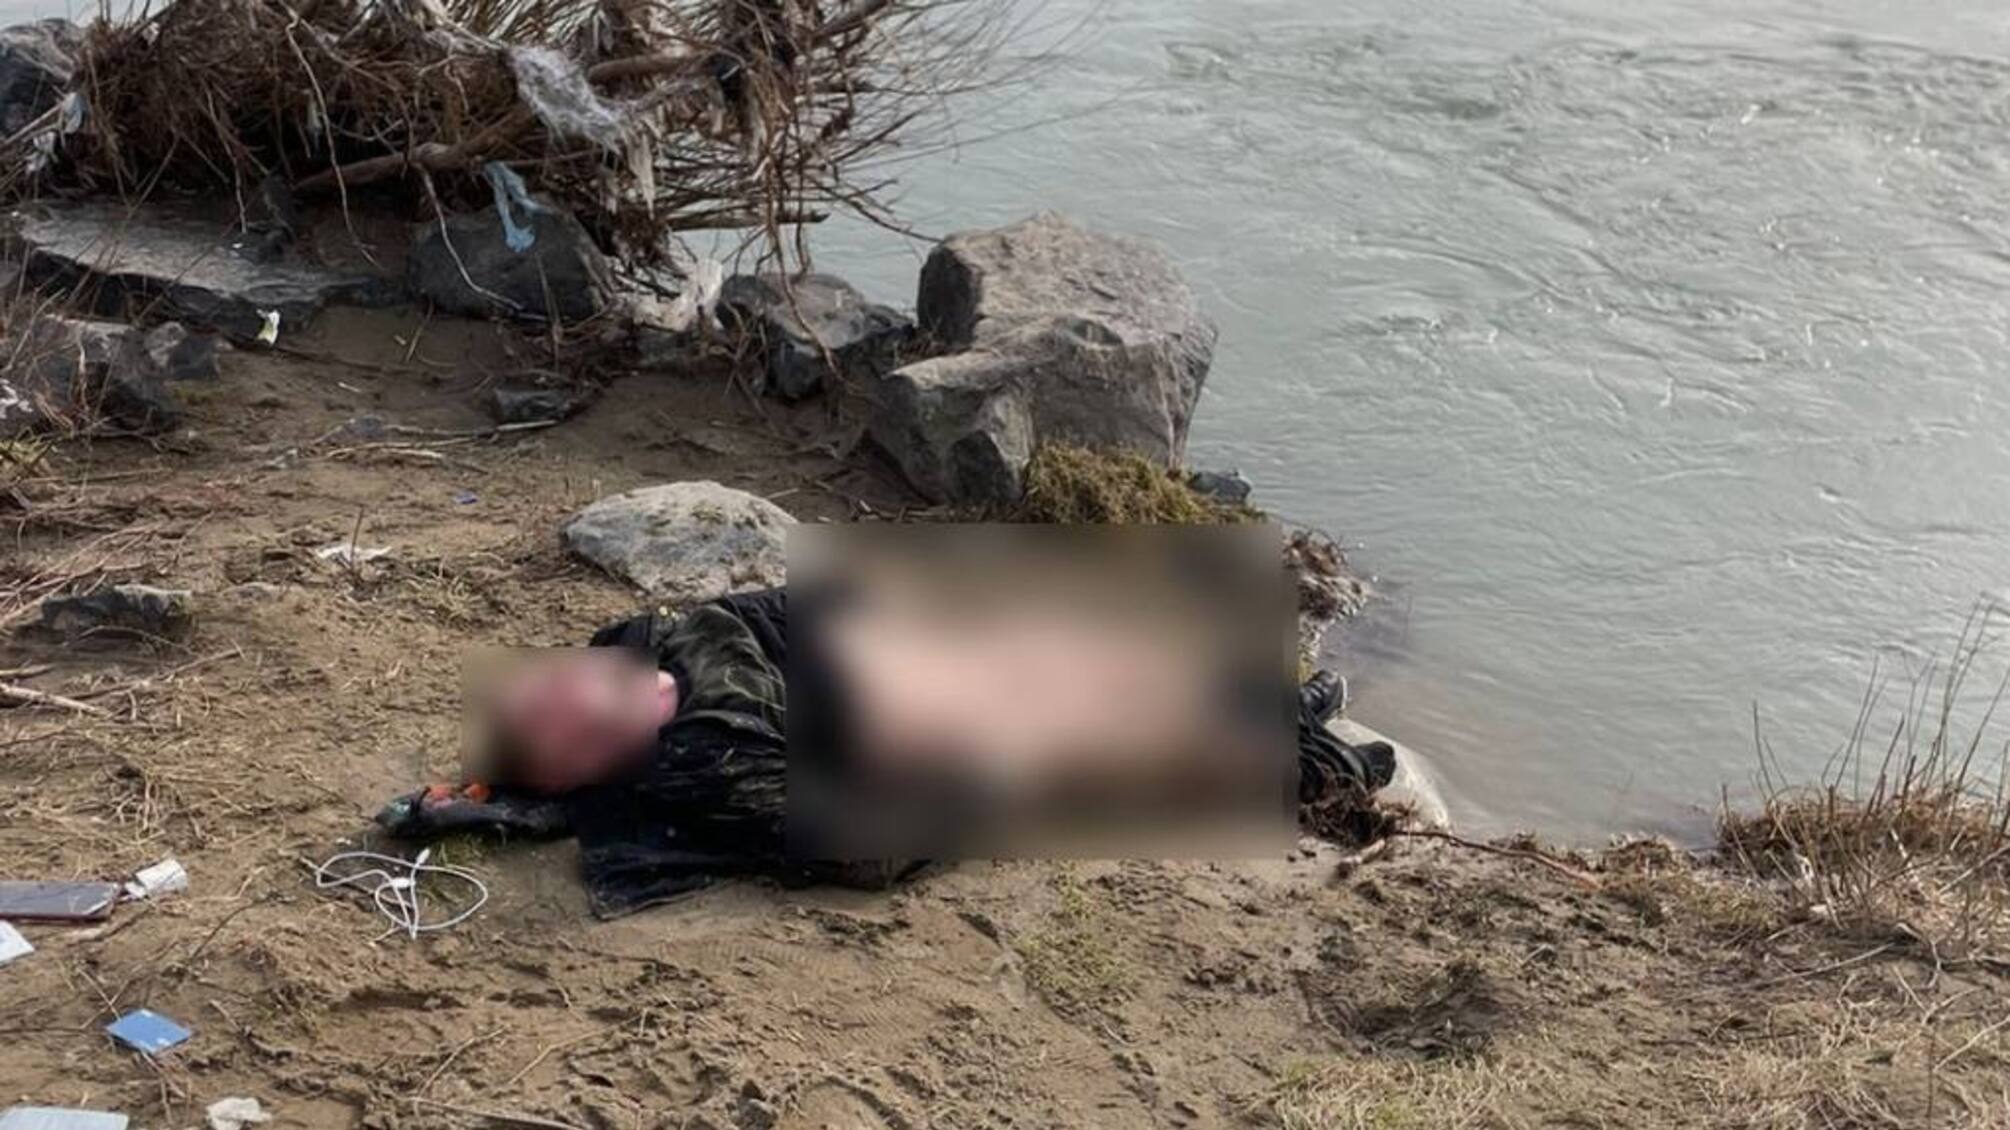 Хотел бежать в Румынию: из Тисы достали тело уклониста